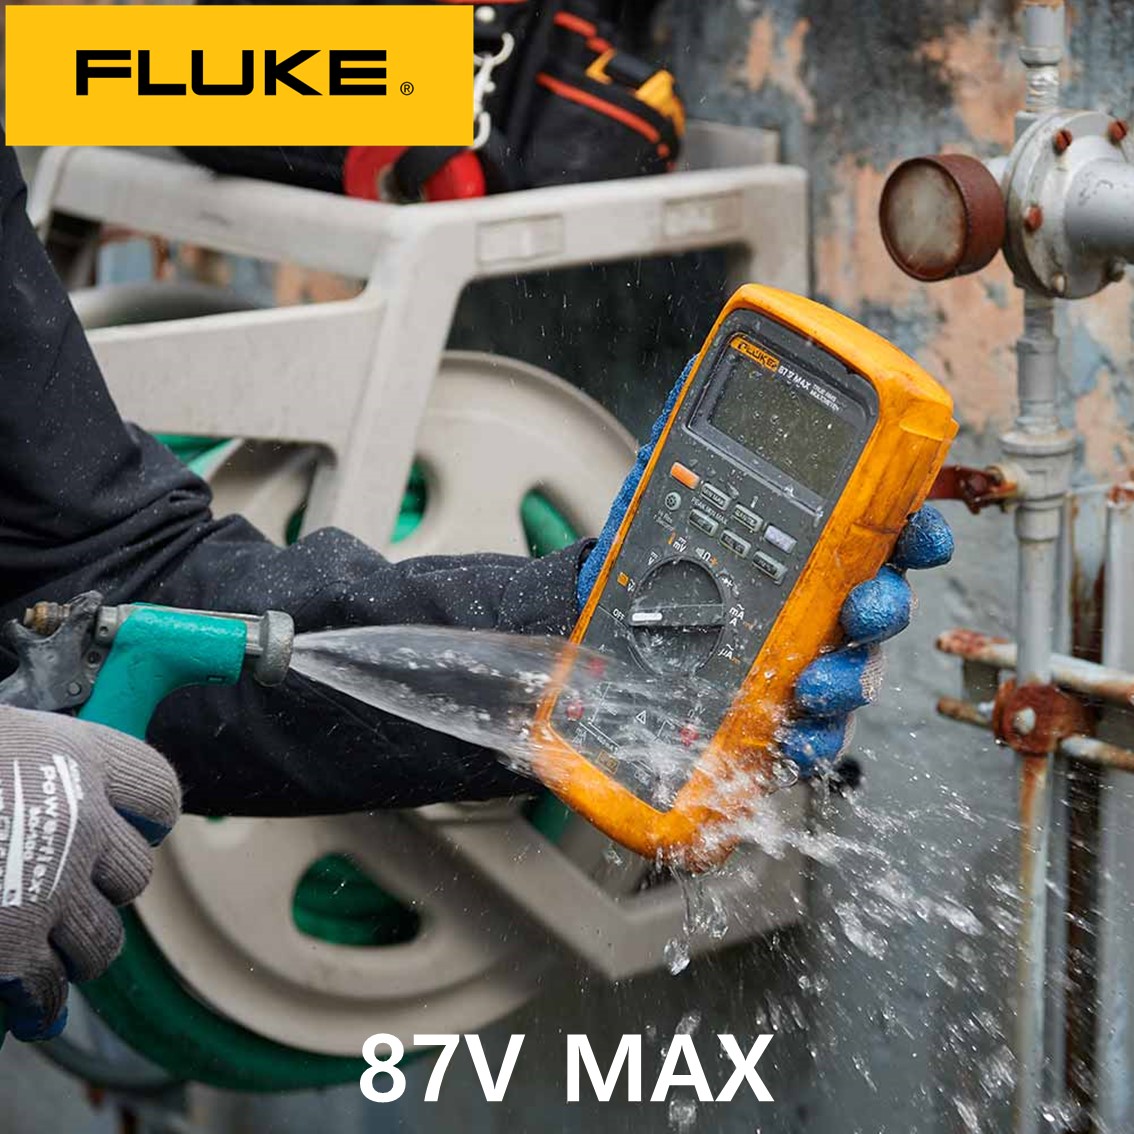 [ FLUKE 87V MAX ] 정품 플루크 디지털 멀티미터, 멀티메타, 디지털테스터, 방수방진 IP67